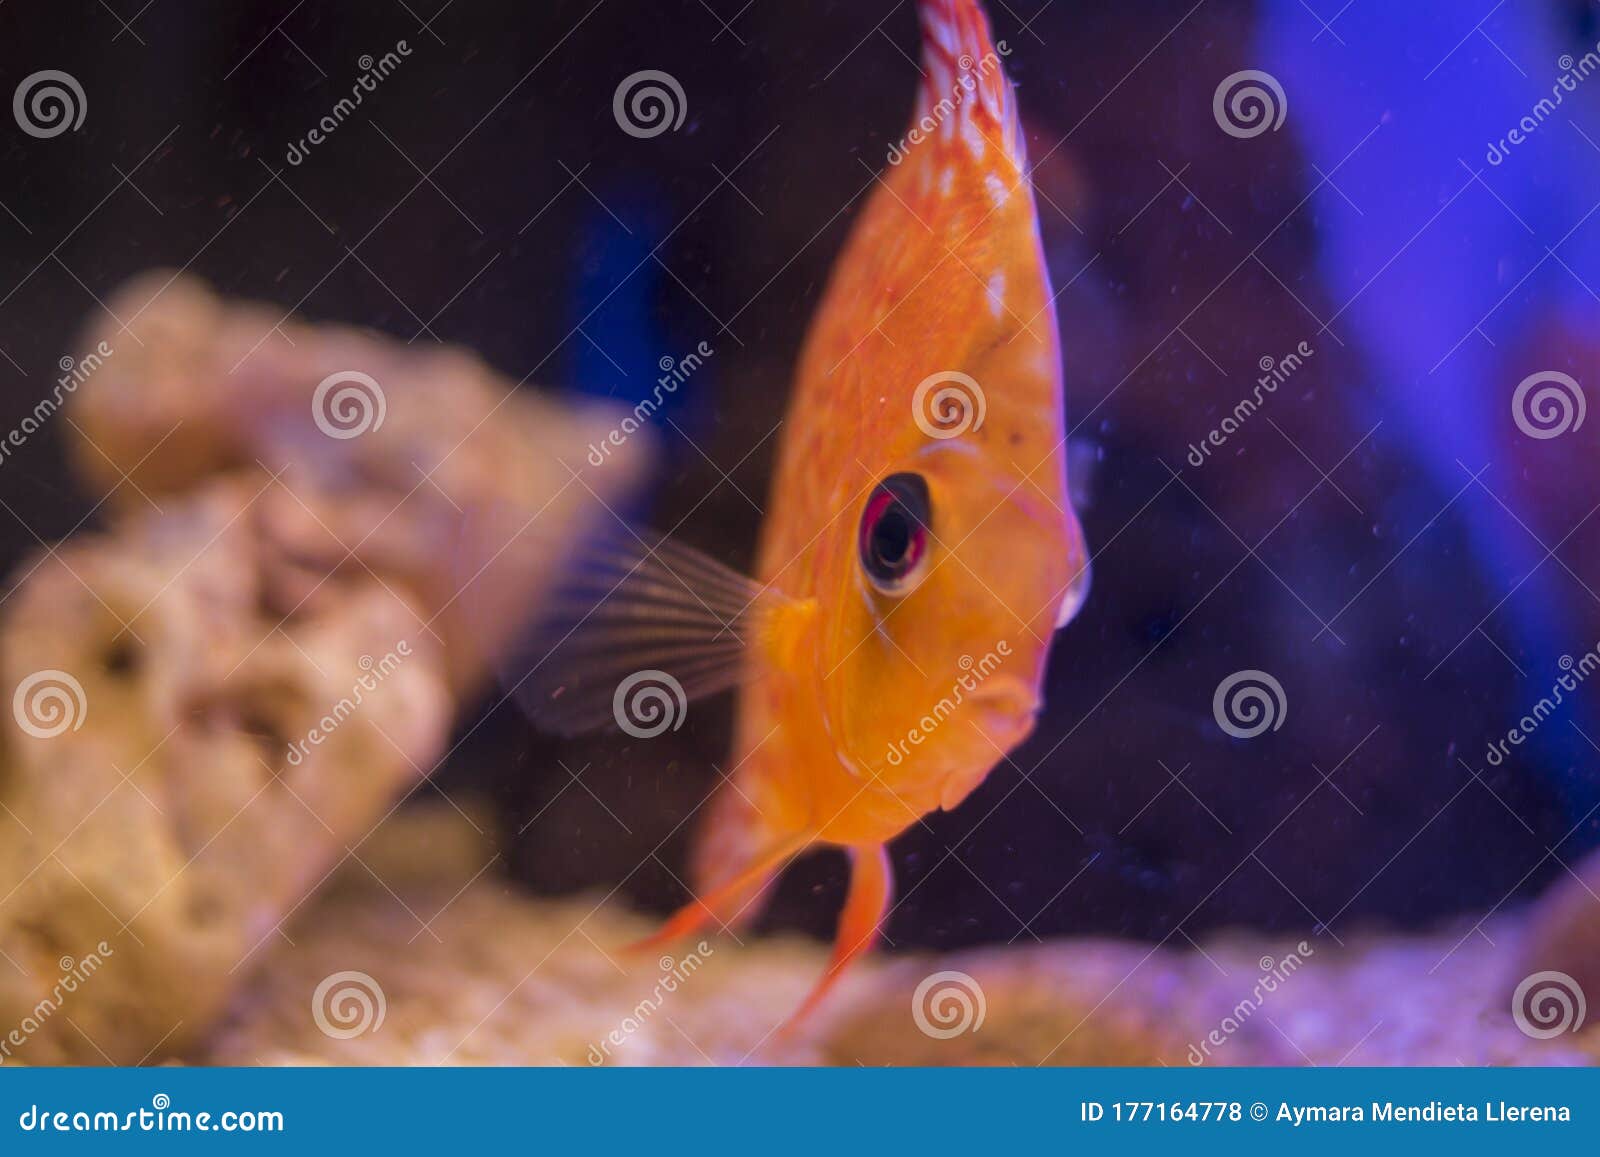 orange discus fire in the aquarium